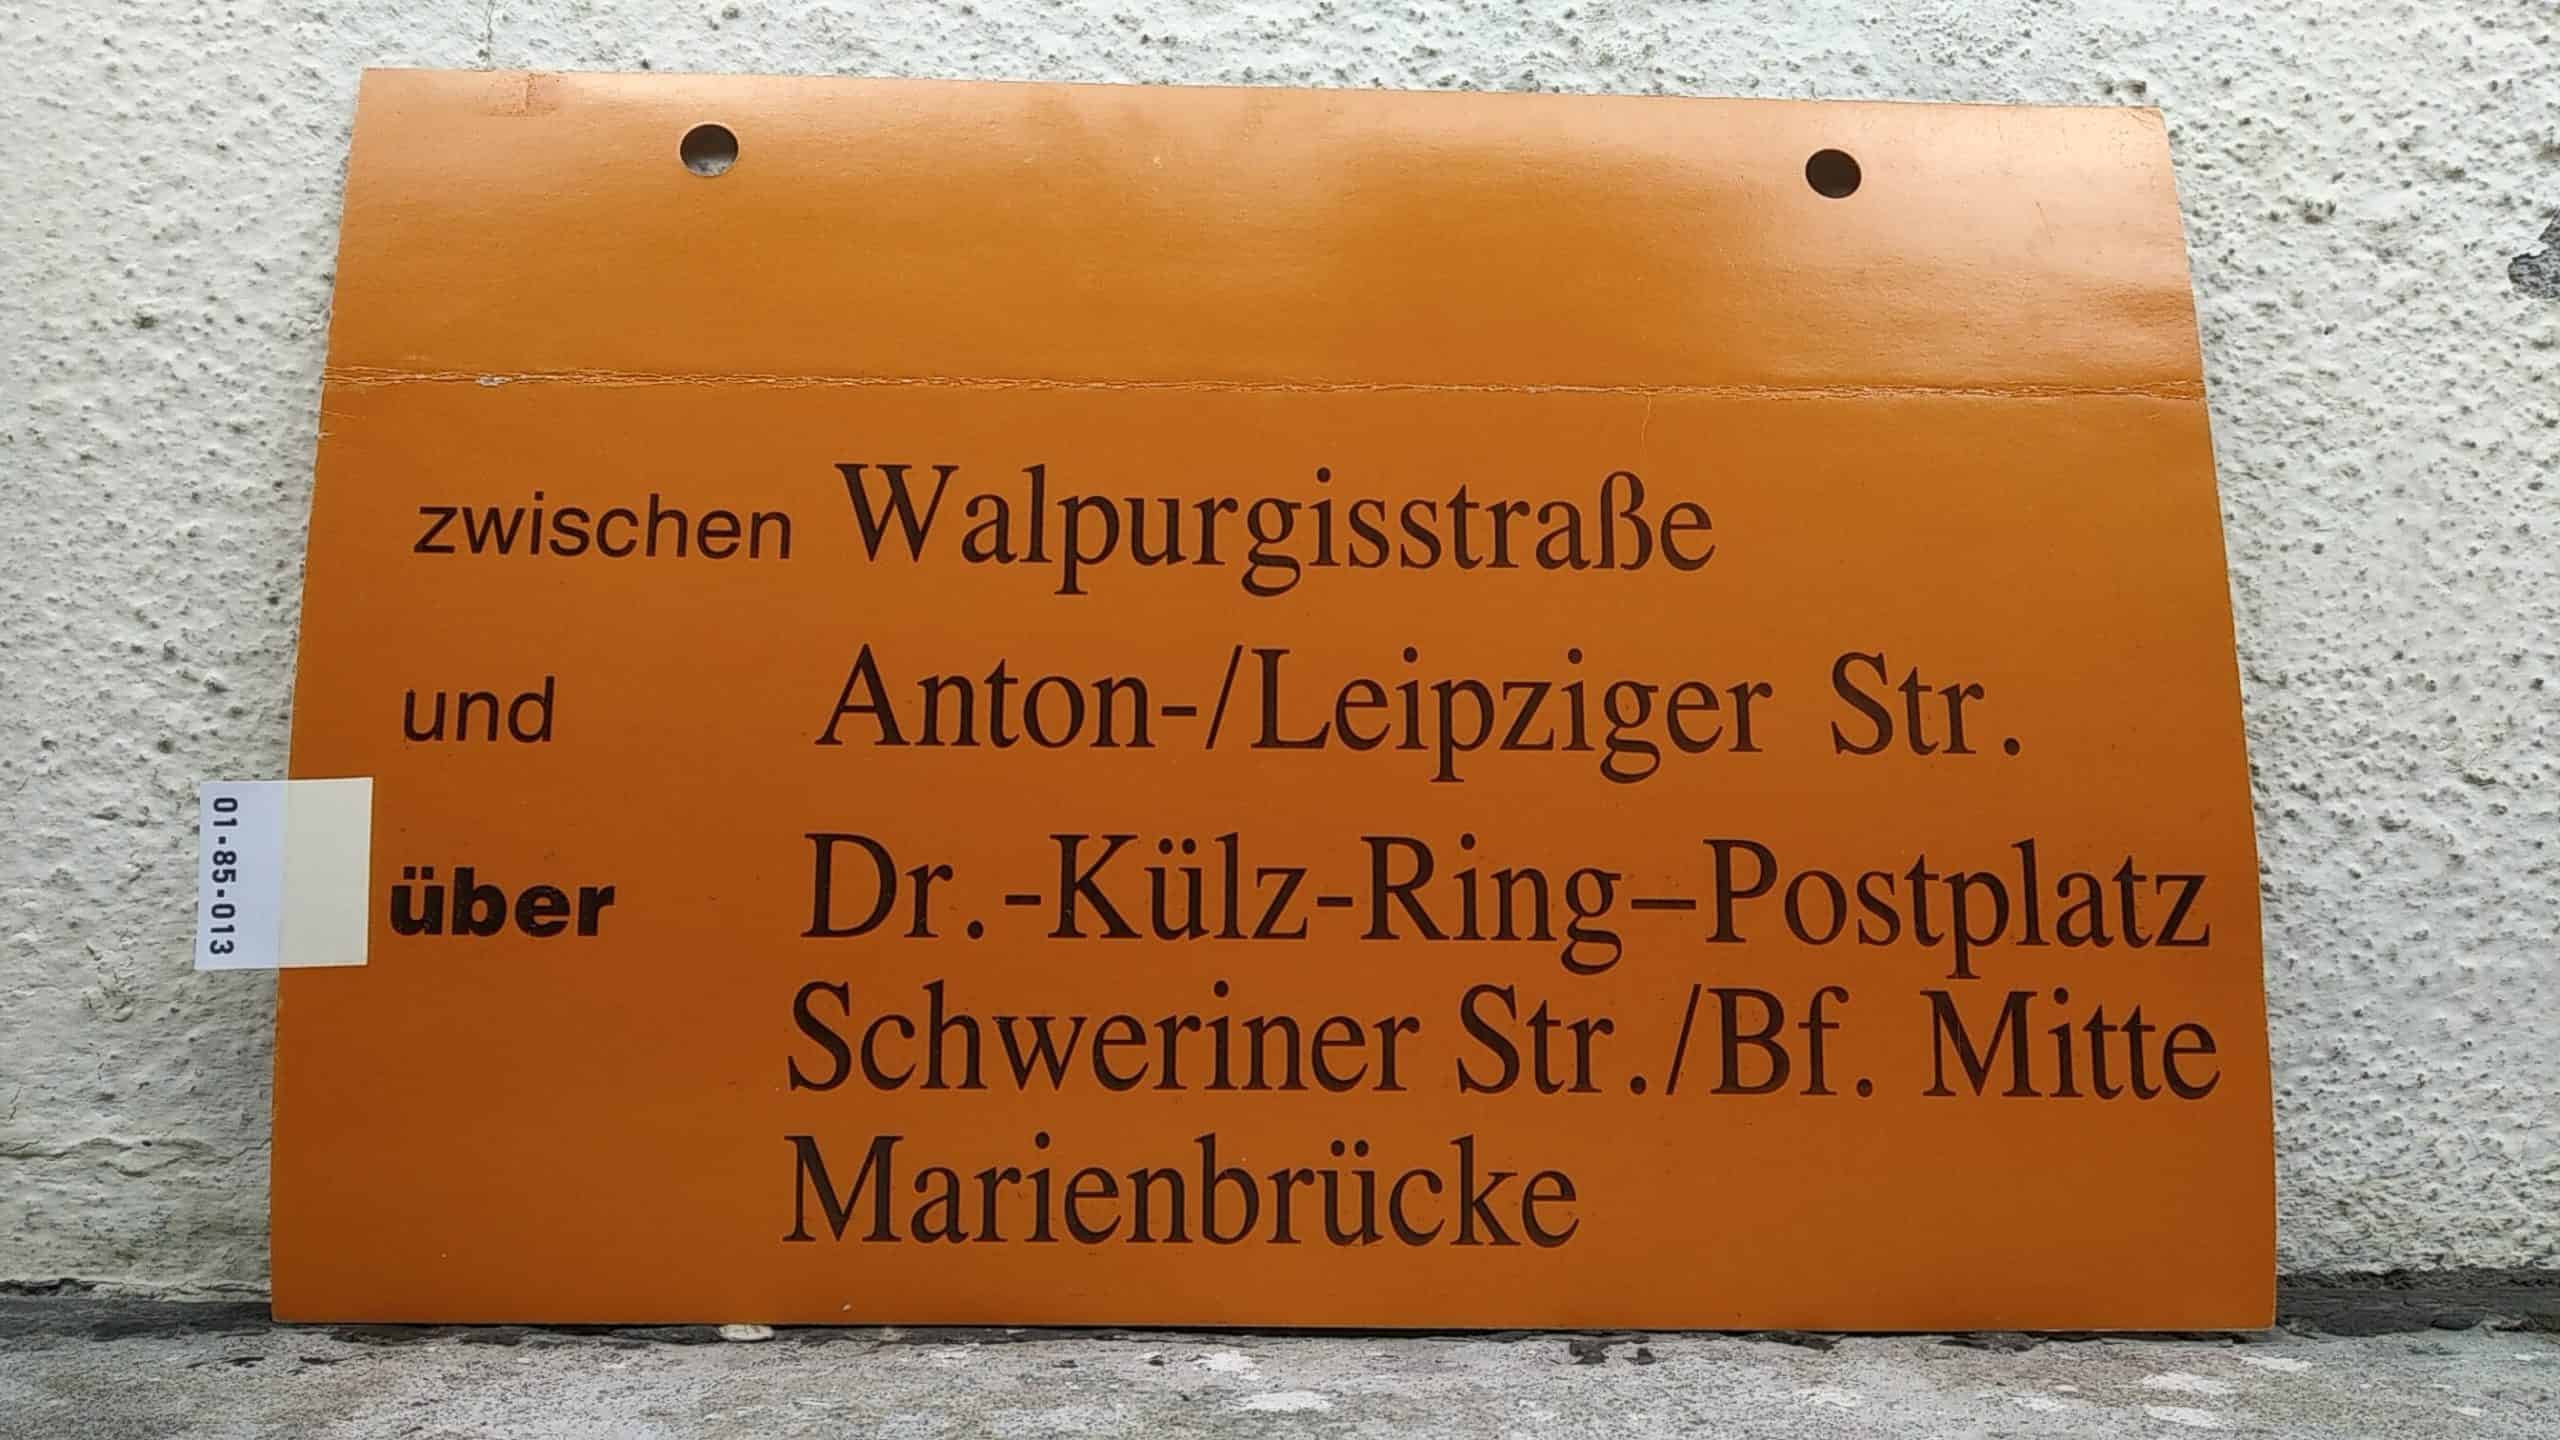 Ein seltenes Straßenbahn-Umleitungsschild aus Dresden: zwischen Walpurgisstraße und Anton-/Leipziger Str. über Dr.-Külz-Ring-Postplatz Schweriner Str./Bf. Mitte Marienbrücke